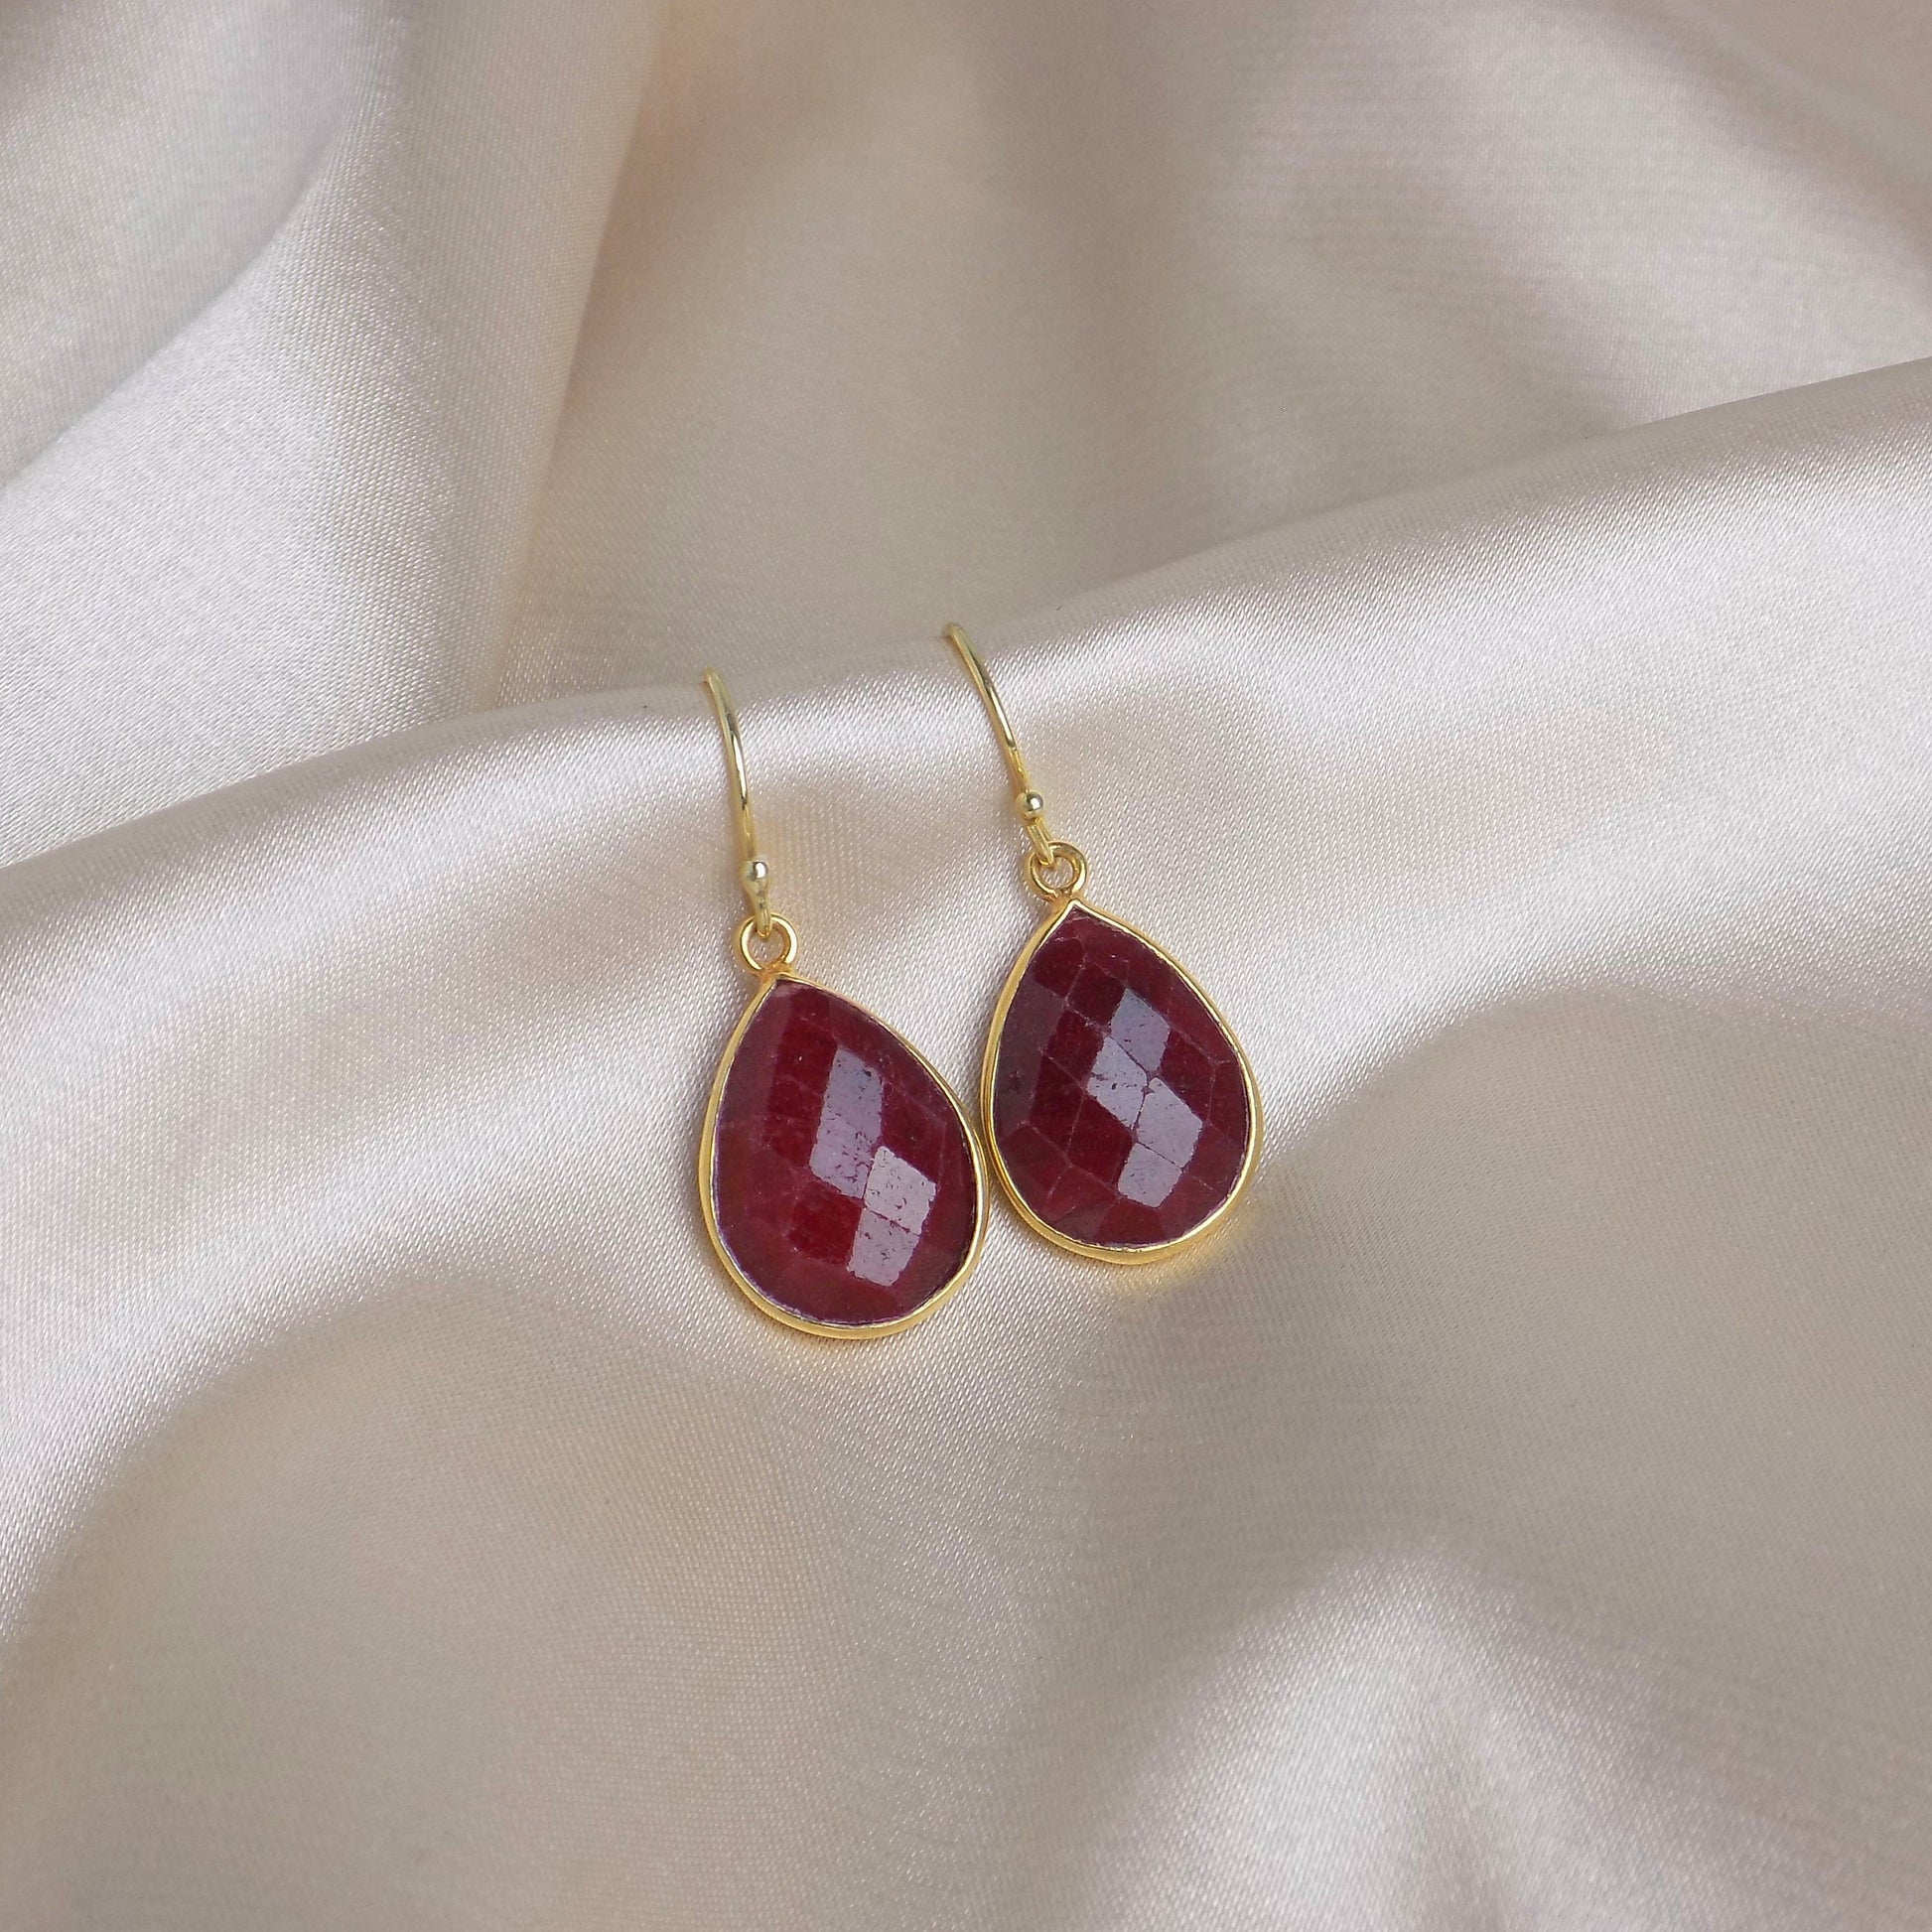 Teardrop Ruby Earrings, Gold Bezel Faceted Gemstones, Raw Genuine Ruby Red Dark Pink, M6-158